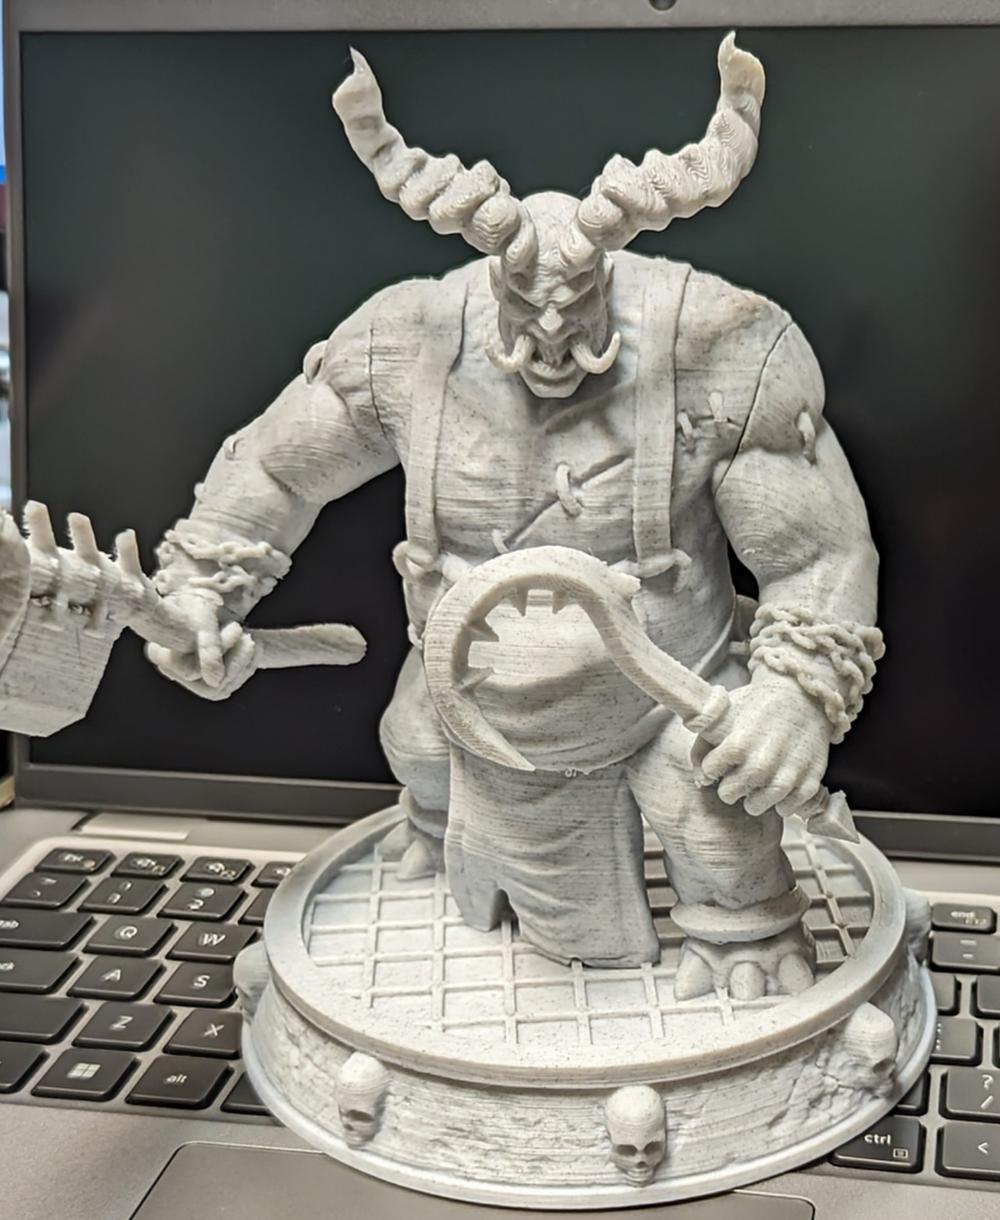 The Butcher figure - Diablo 3d model